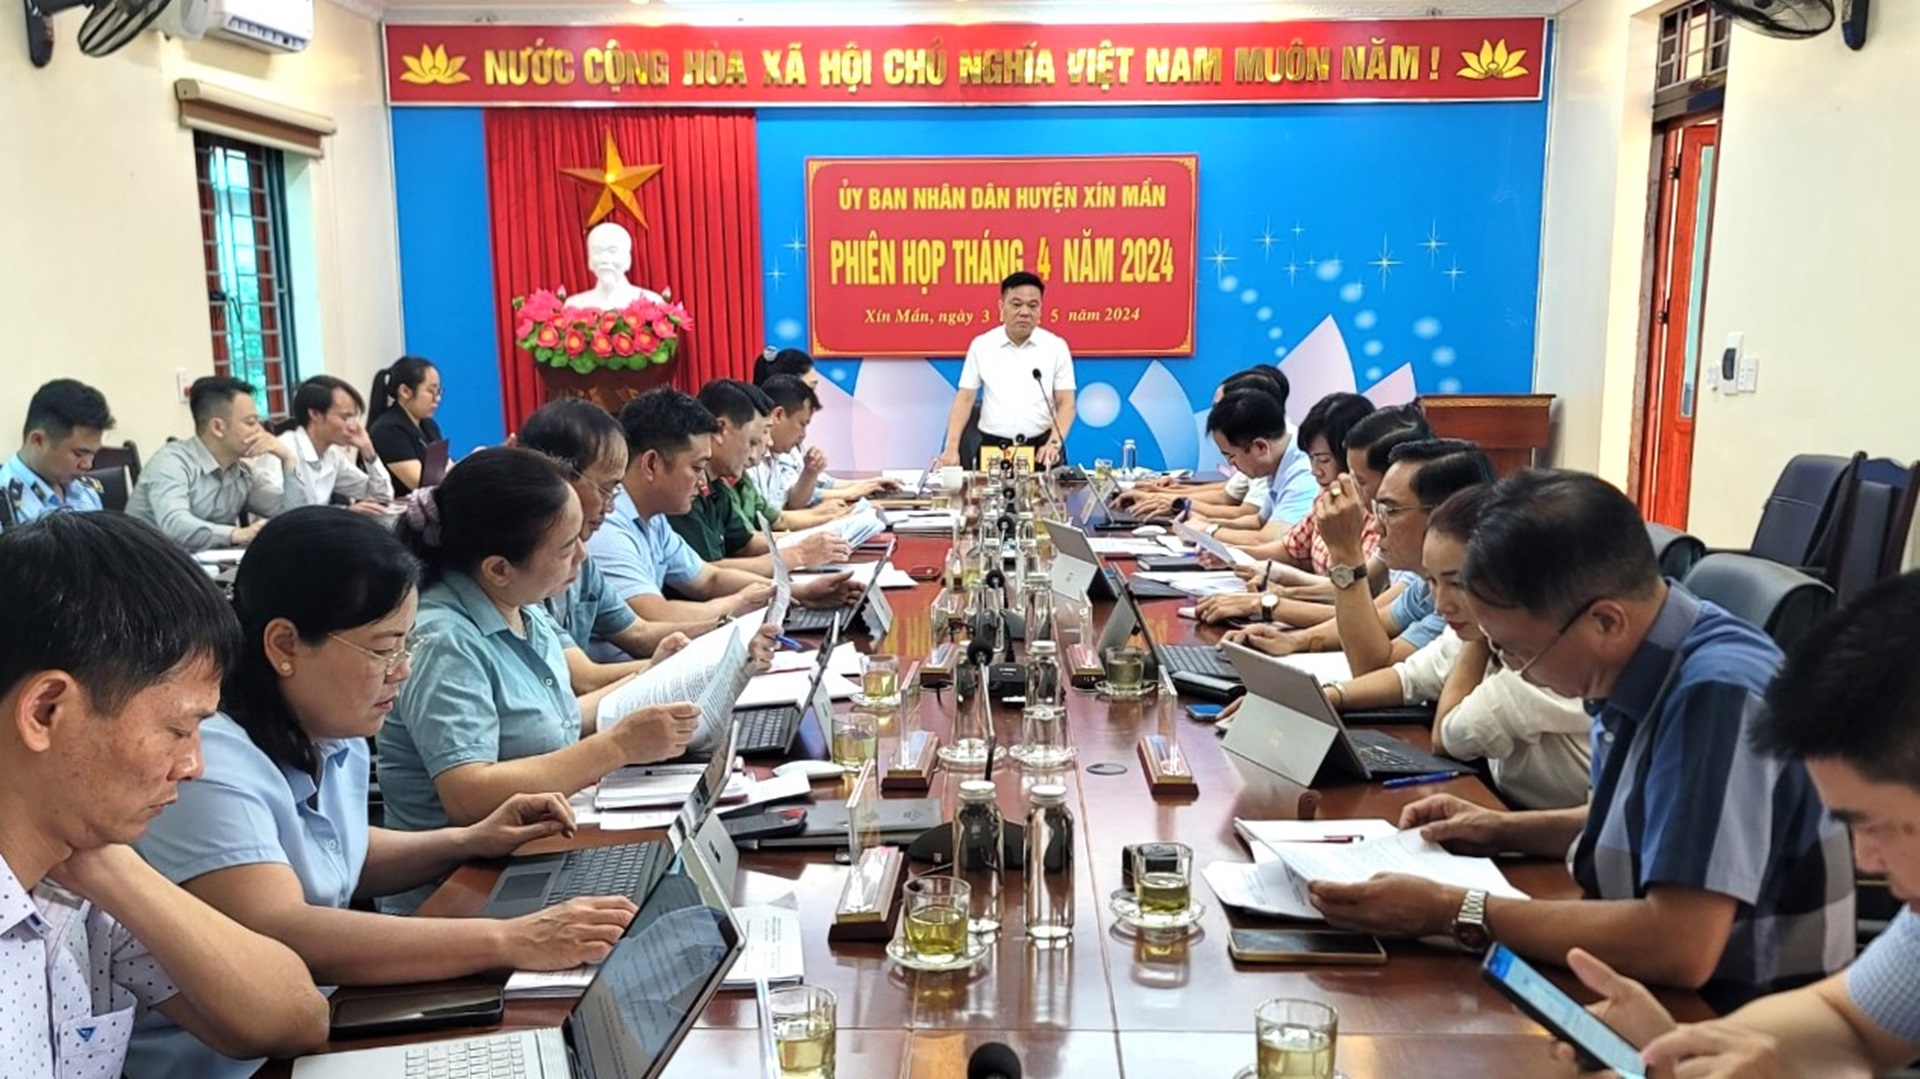 Phiên họp Tháng 4 UBND huyện Xín Mần